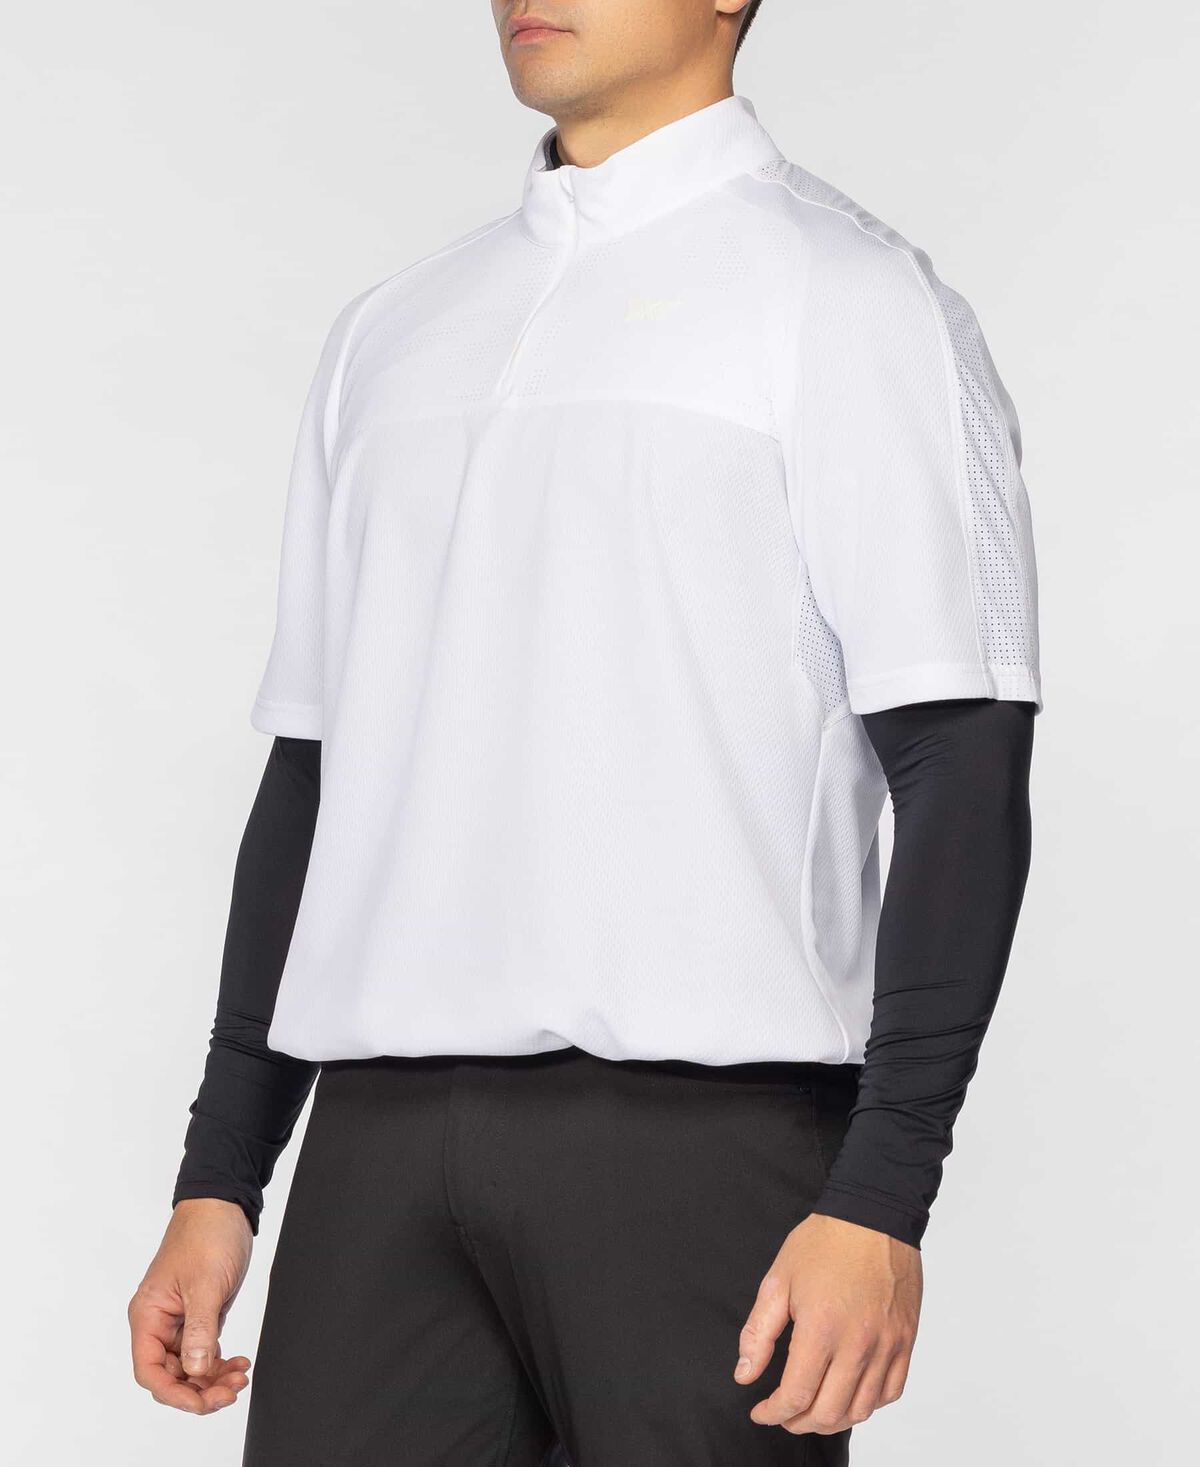 Men's 1/4 Zip Short Sleeve Anorak - White - Small 